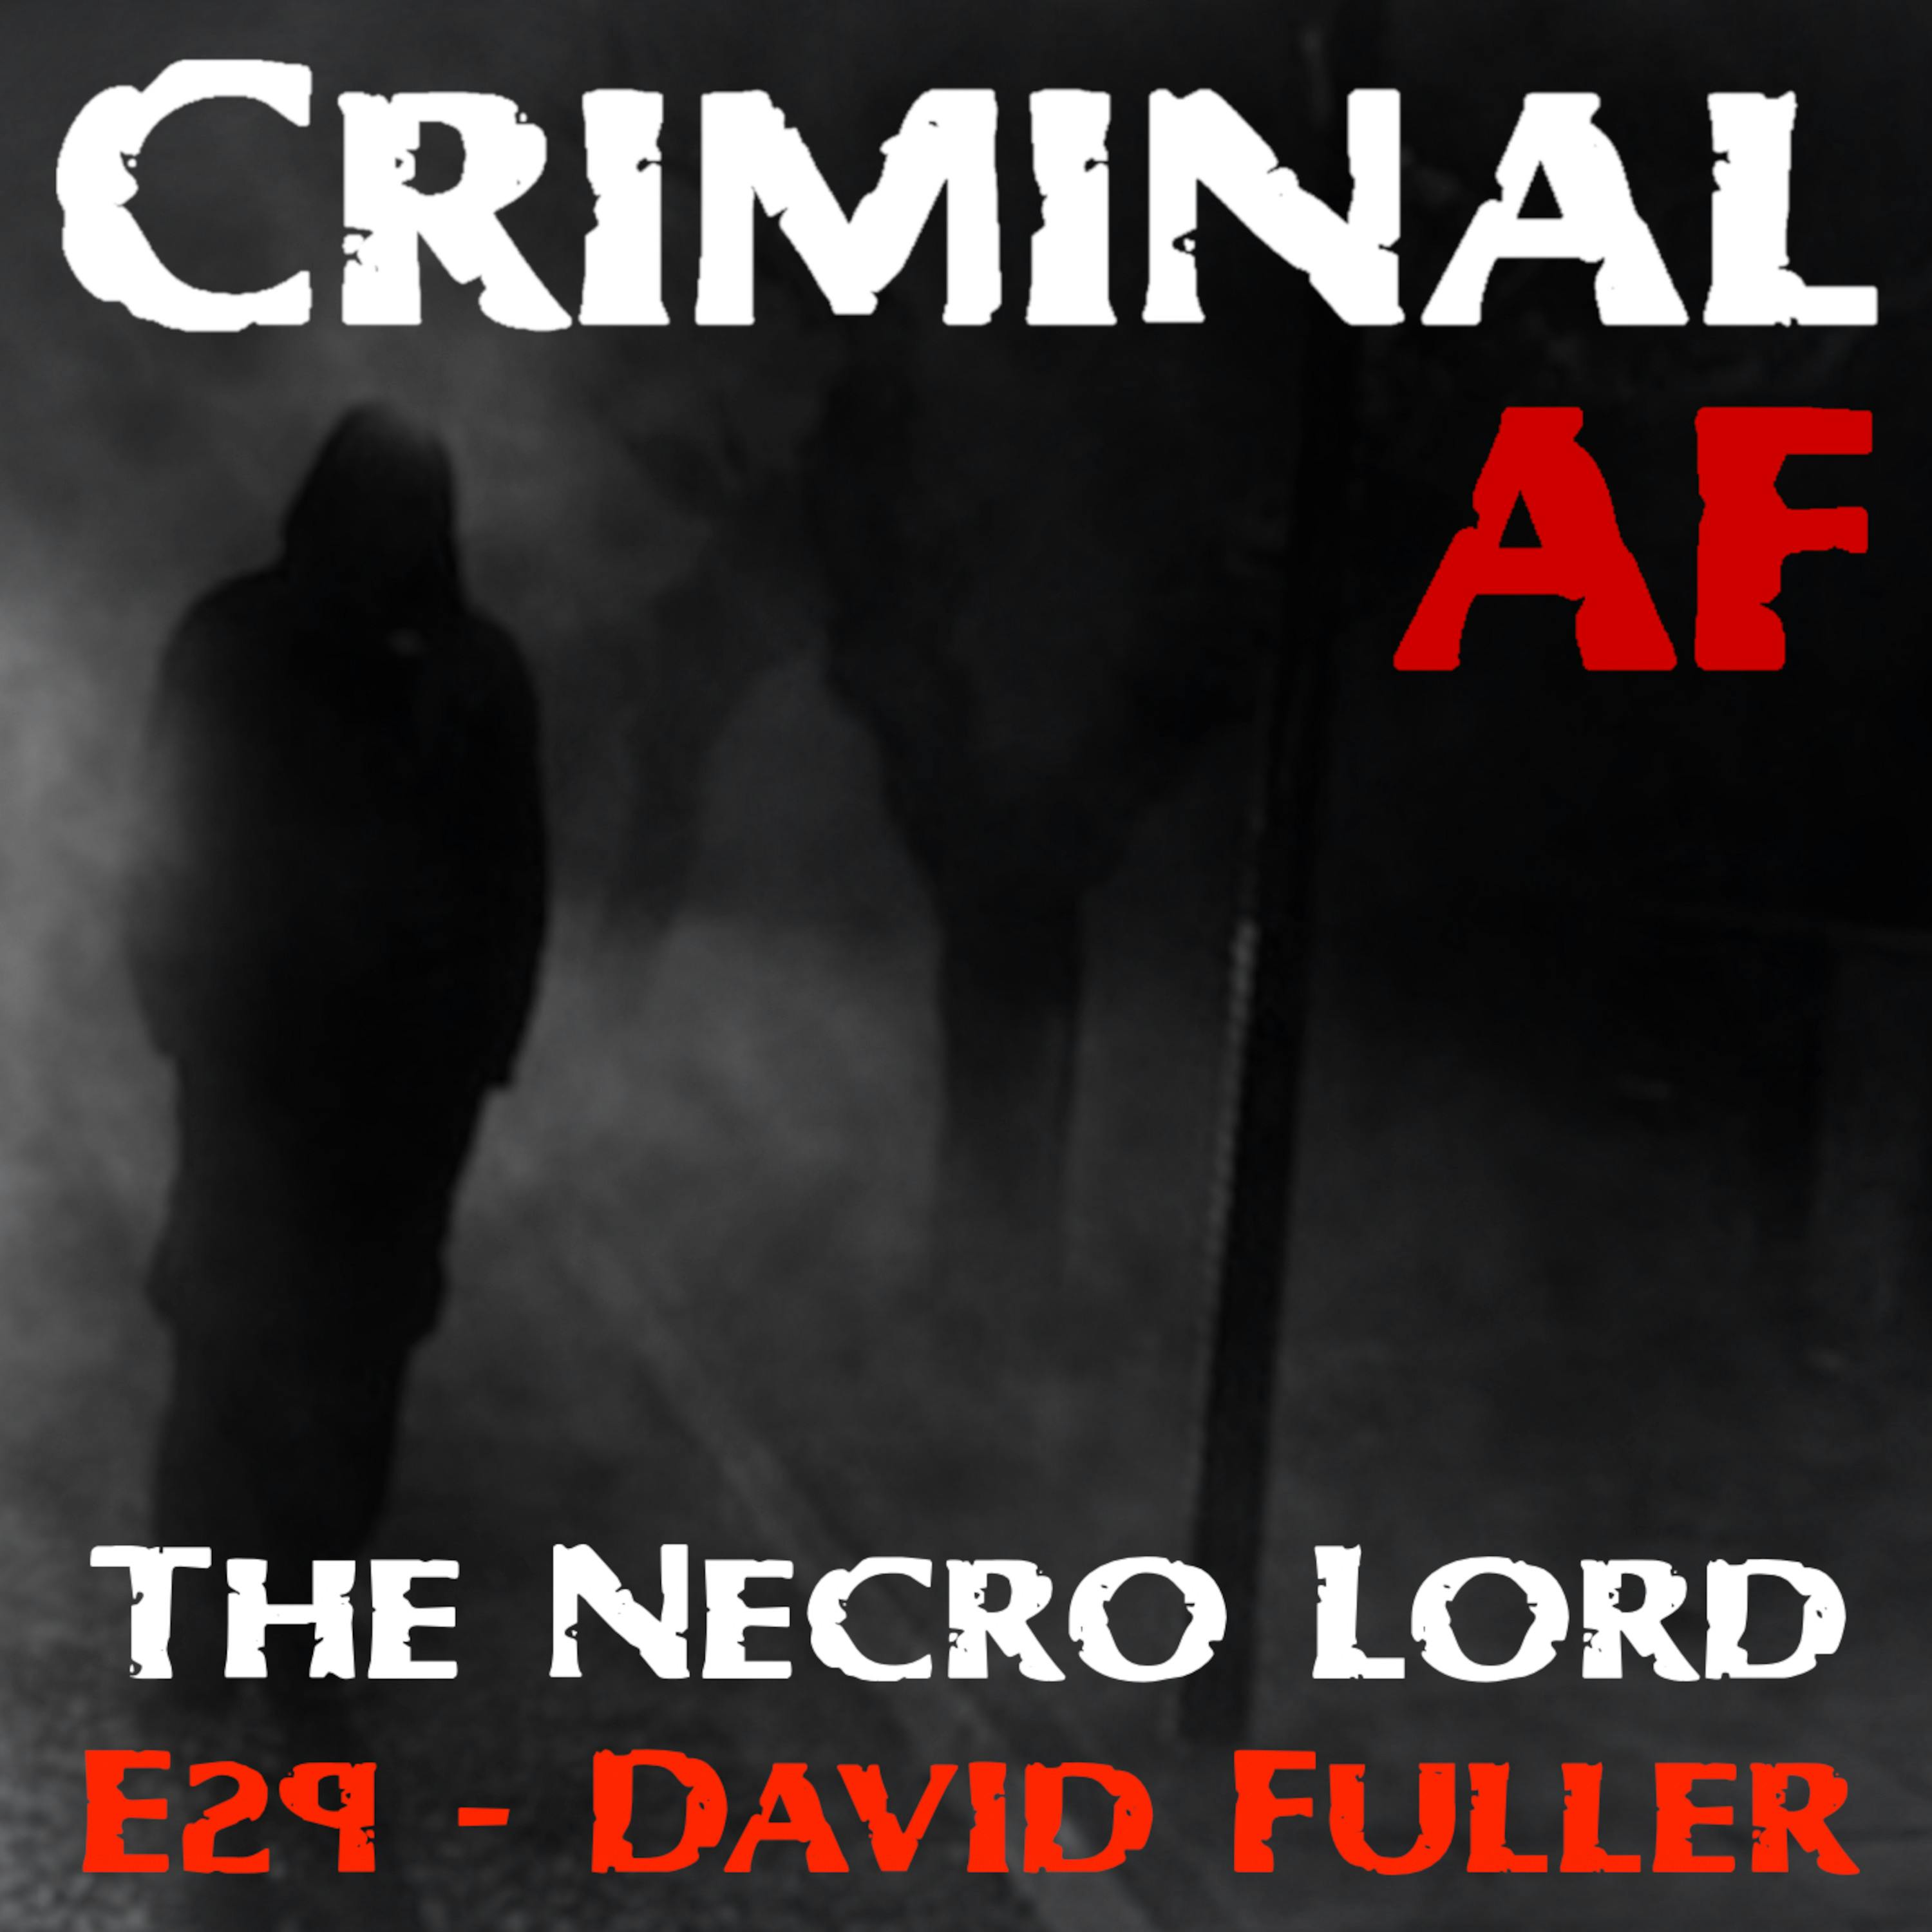 The Necro Lord - David Fuller E29